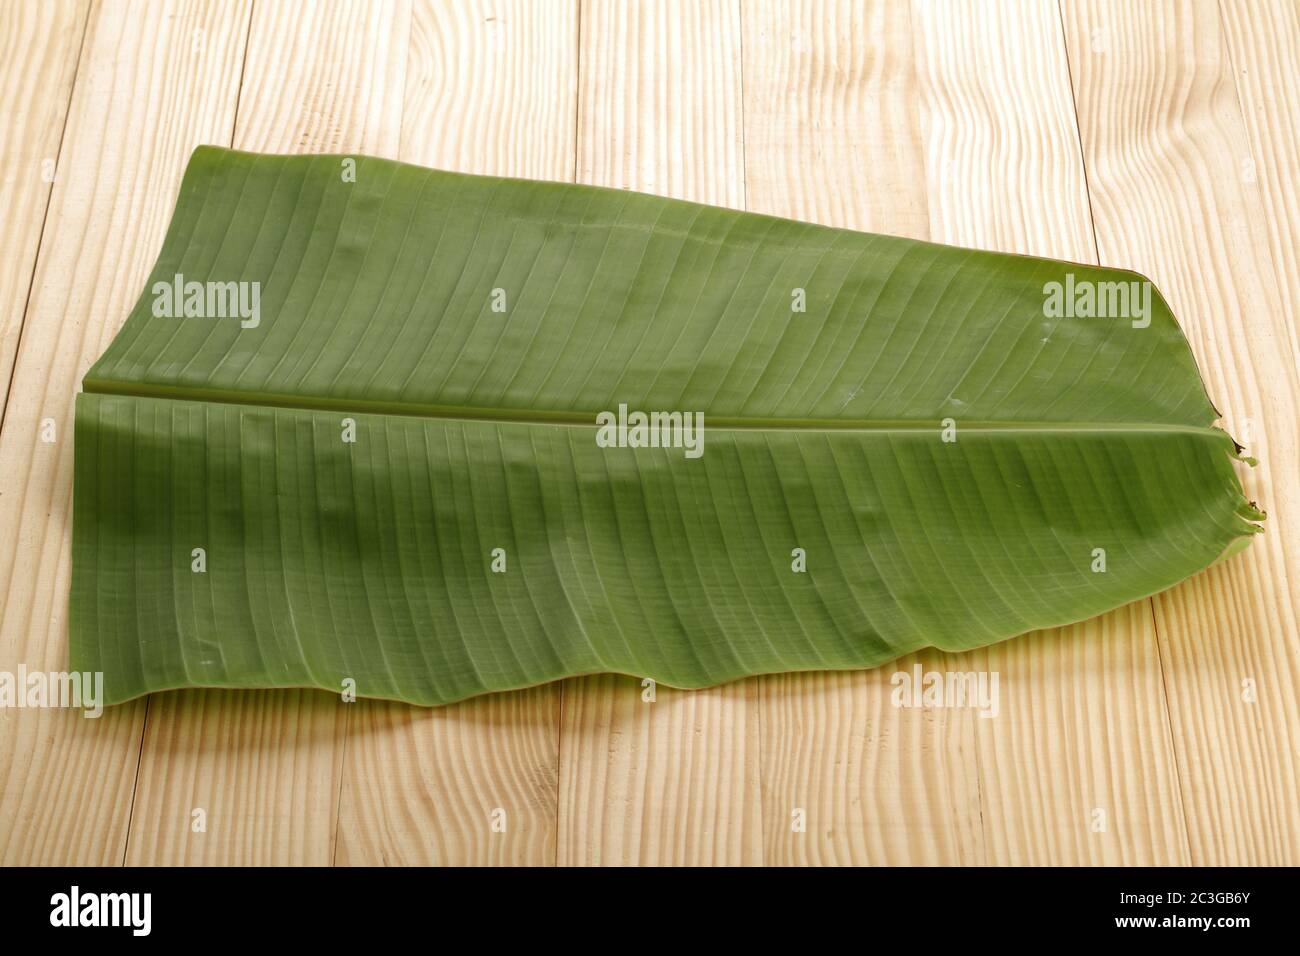 Feuille de banane , feuille de Kerala sadya, une plaque traditionnellement utilisée pendant la fête et les festivals, image isolée de feuille de banane verte fraîche disposée sur blanc Banque D'Images